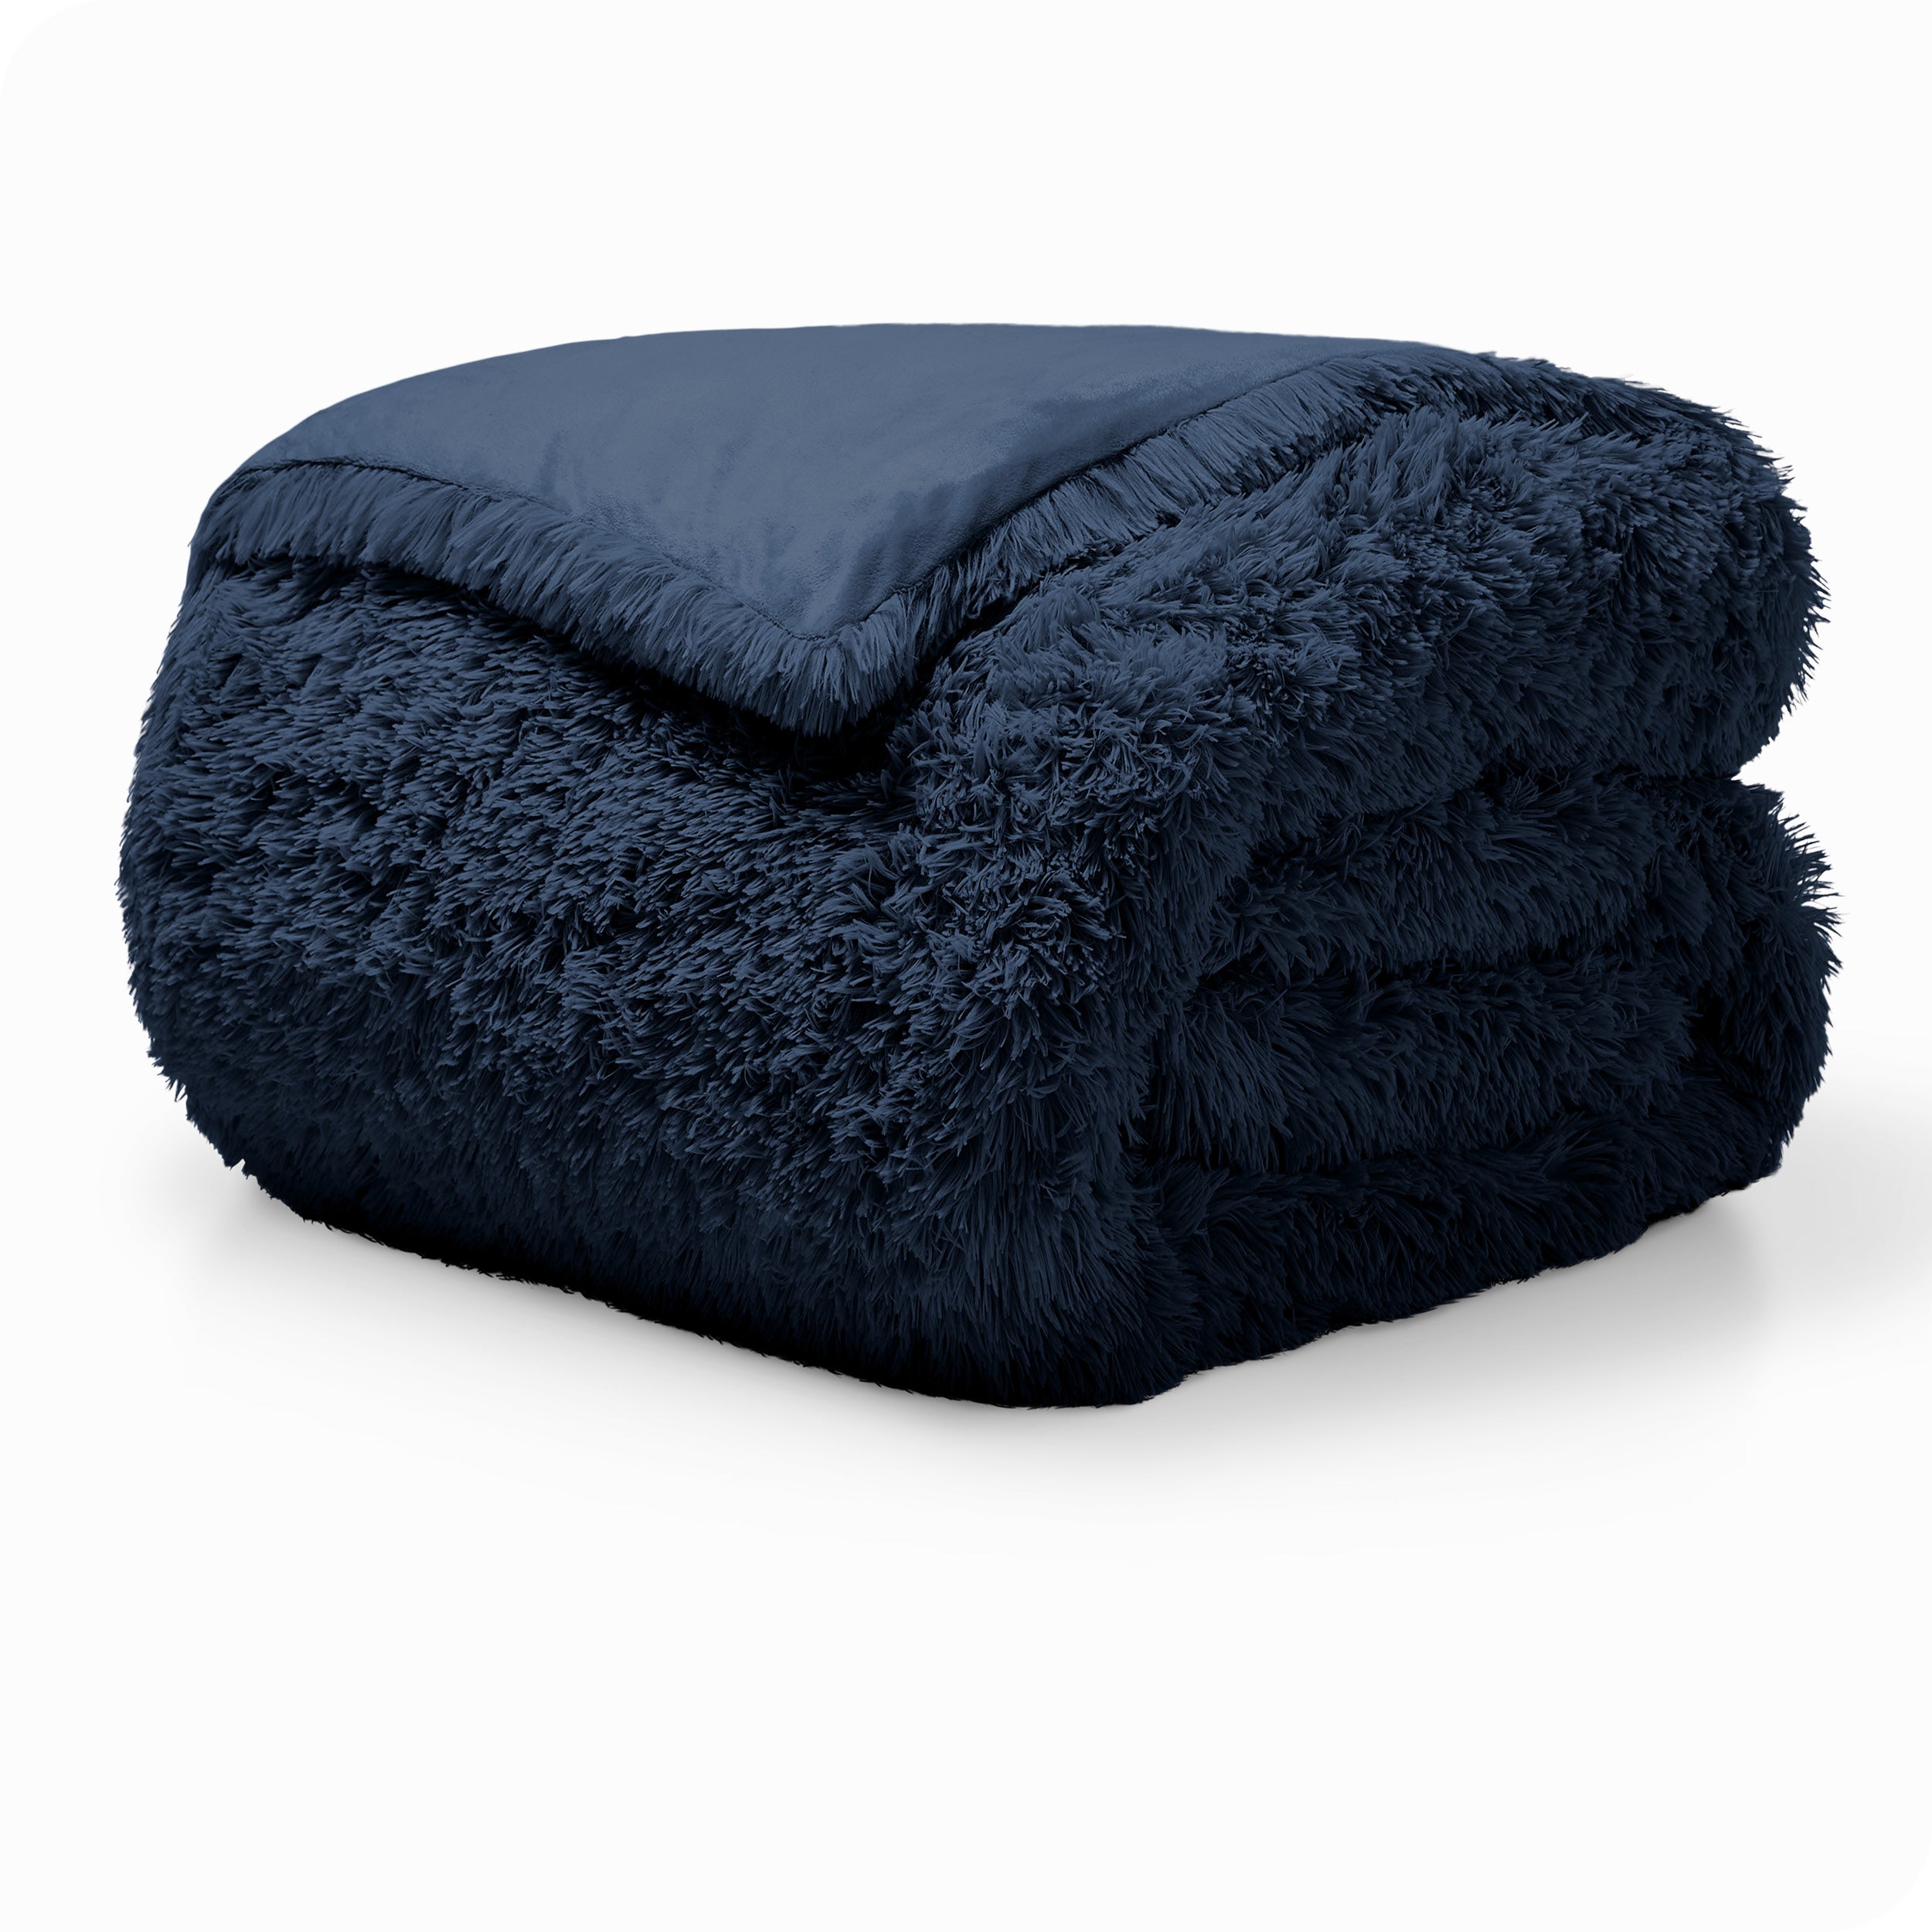 A dark blue shaggy duvet cover folded neatly